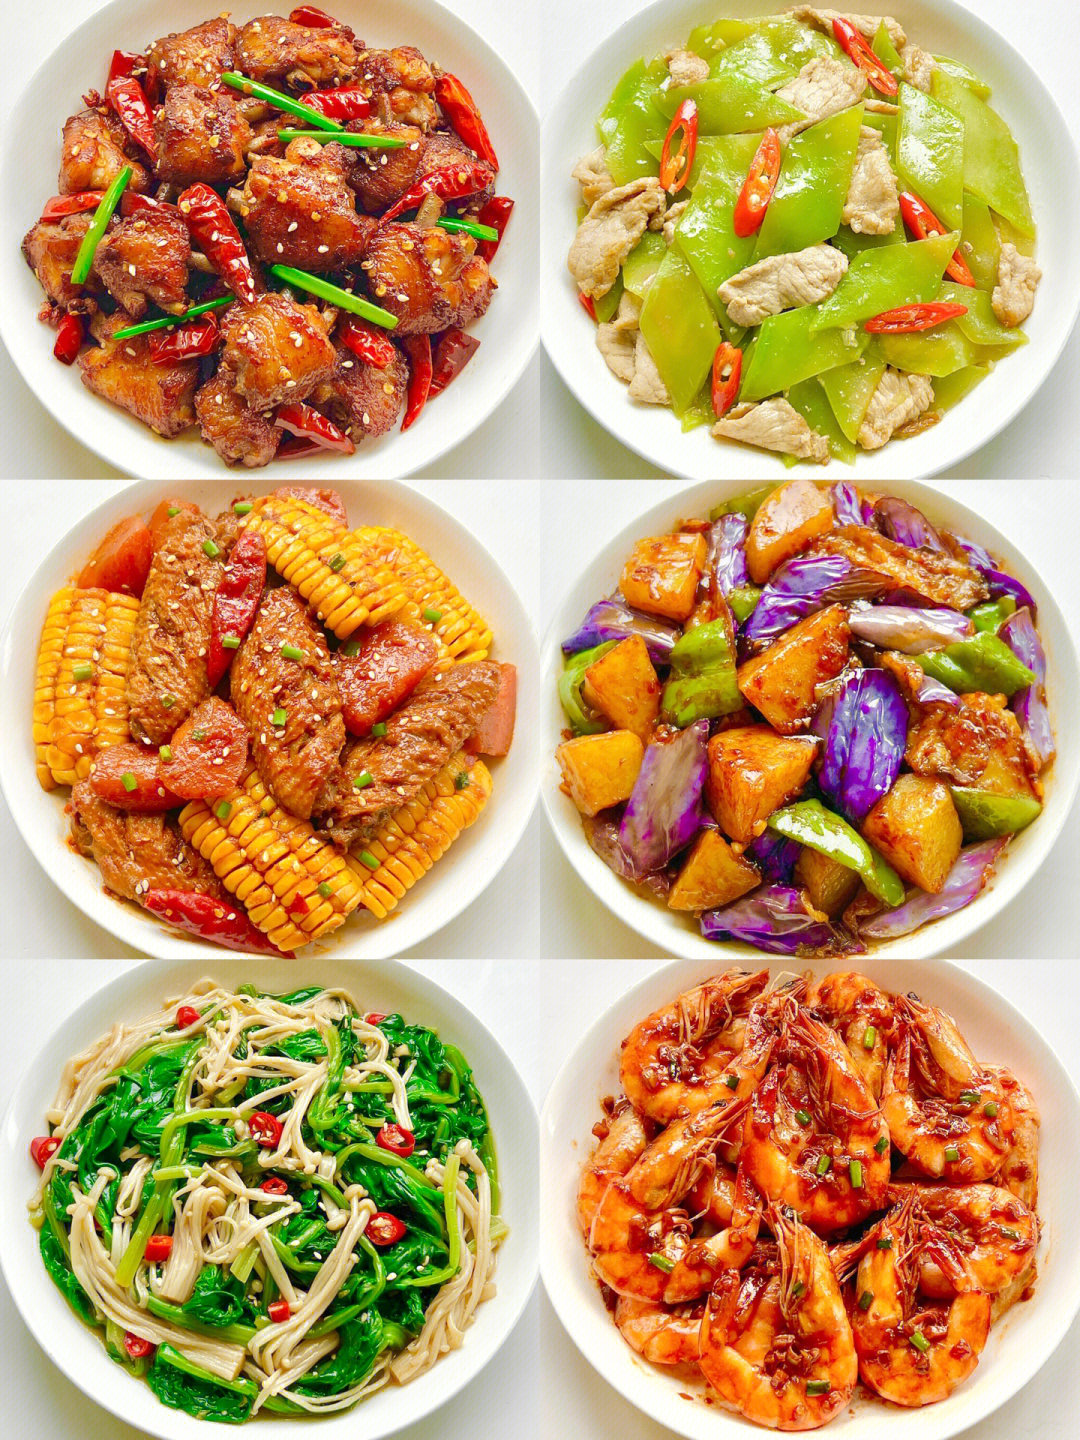 30种最常吃的家常菜图片